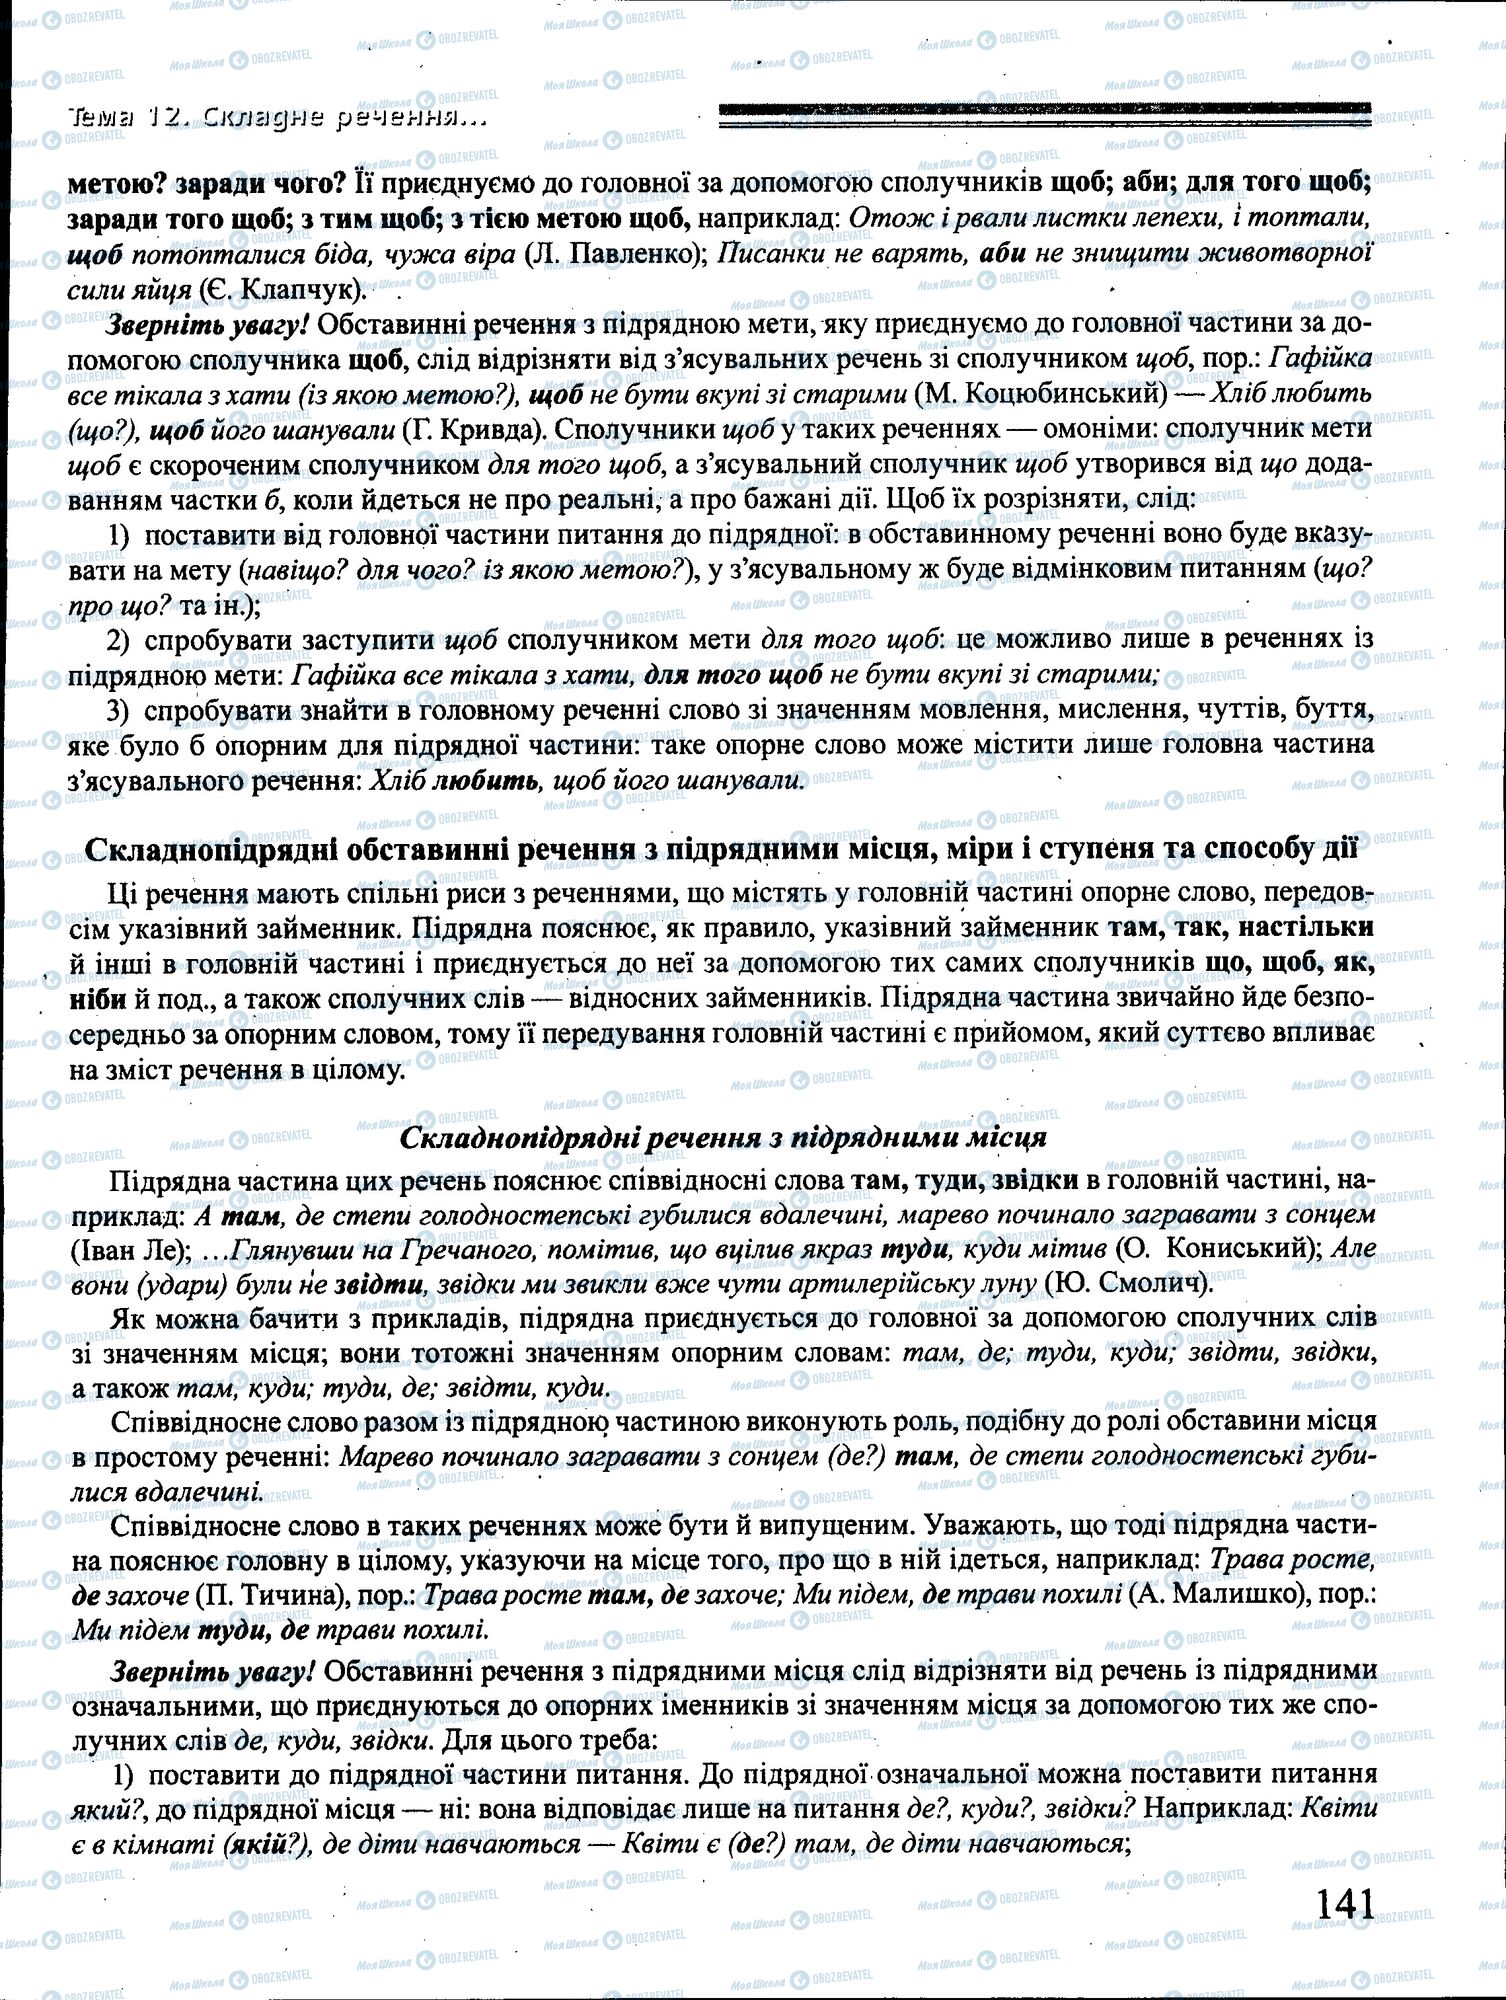 ДПА Укр мова 4 класс страница 141